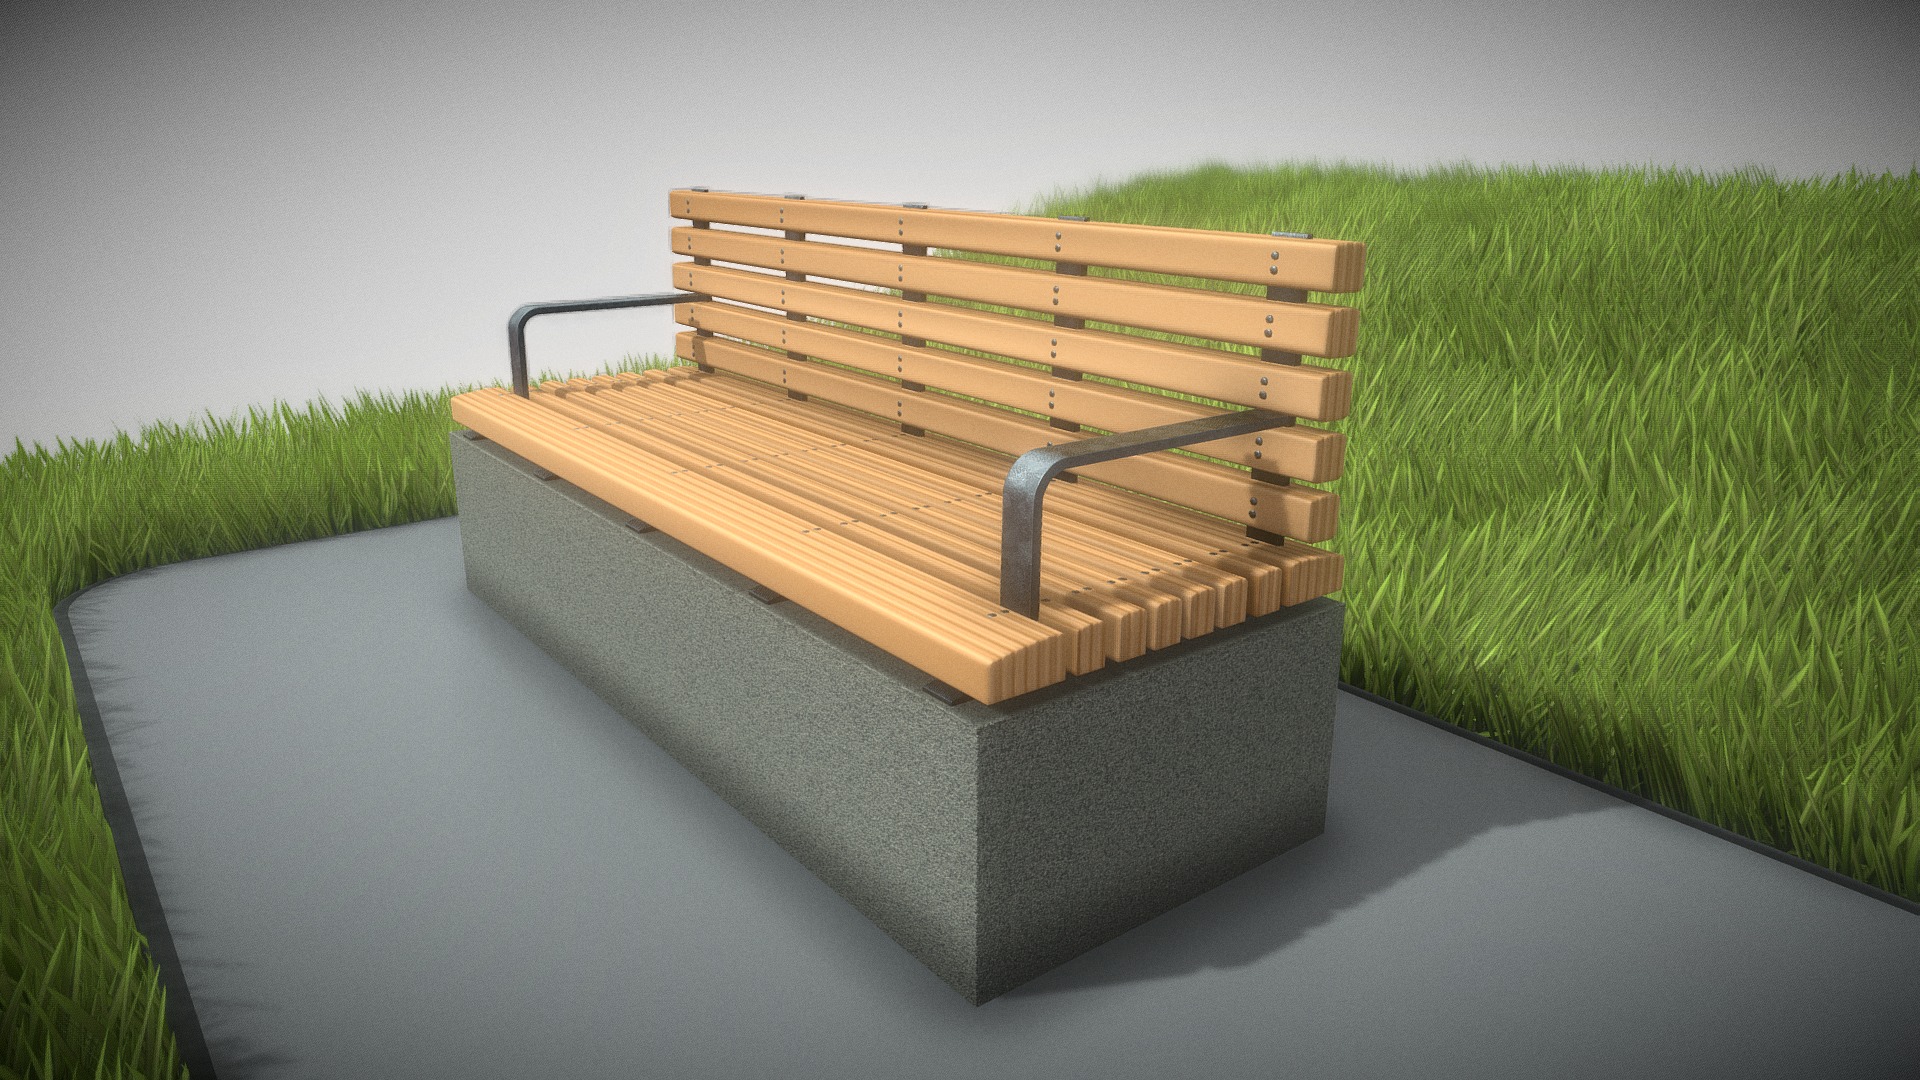 3D model Park Bench [4] Version 3 - This is a 3D model of the Park Bench [4] Version 3. The 3D model is about a wooden bench on a concrete platform.